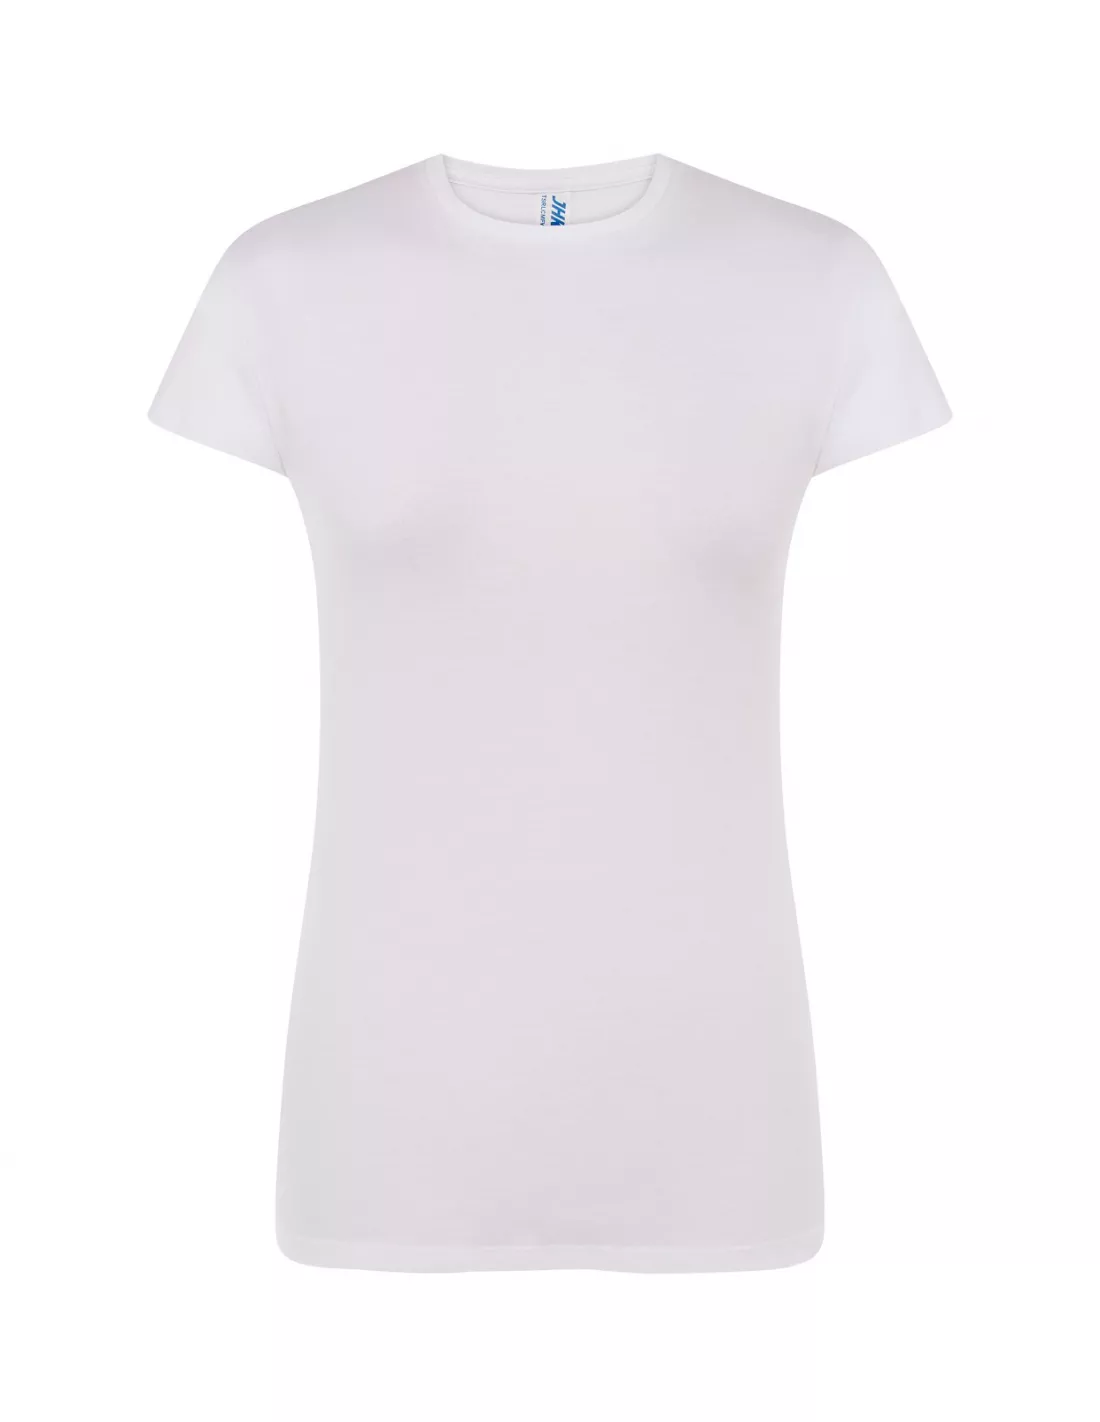 Camiseta larga LADY WHITE LONG